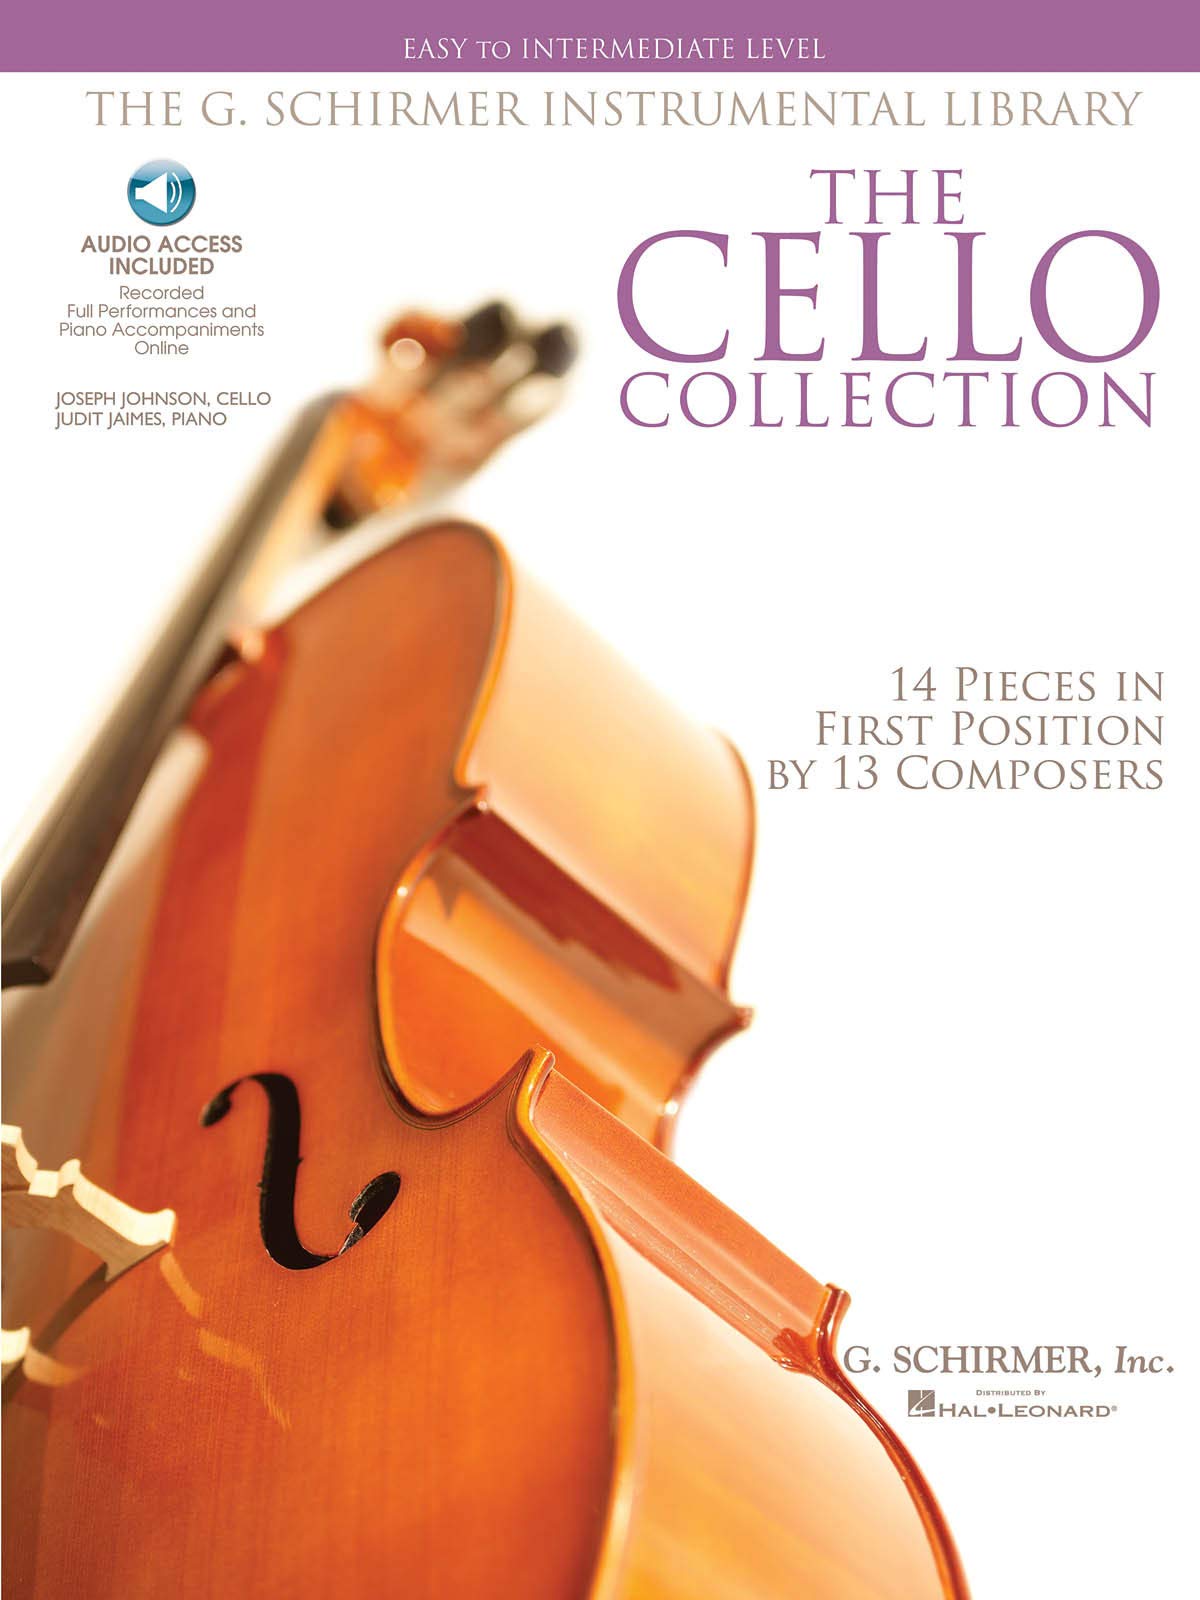 The Cello Collection Easy To Intermediate Cello/Piano G. Schirmer Instr Library Bk/Ado